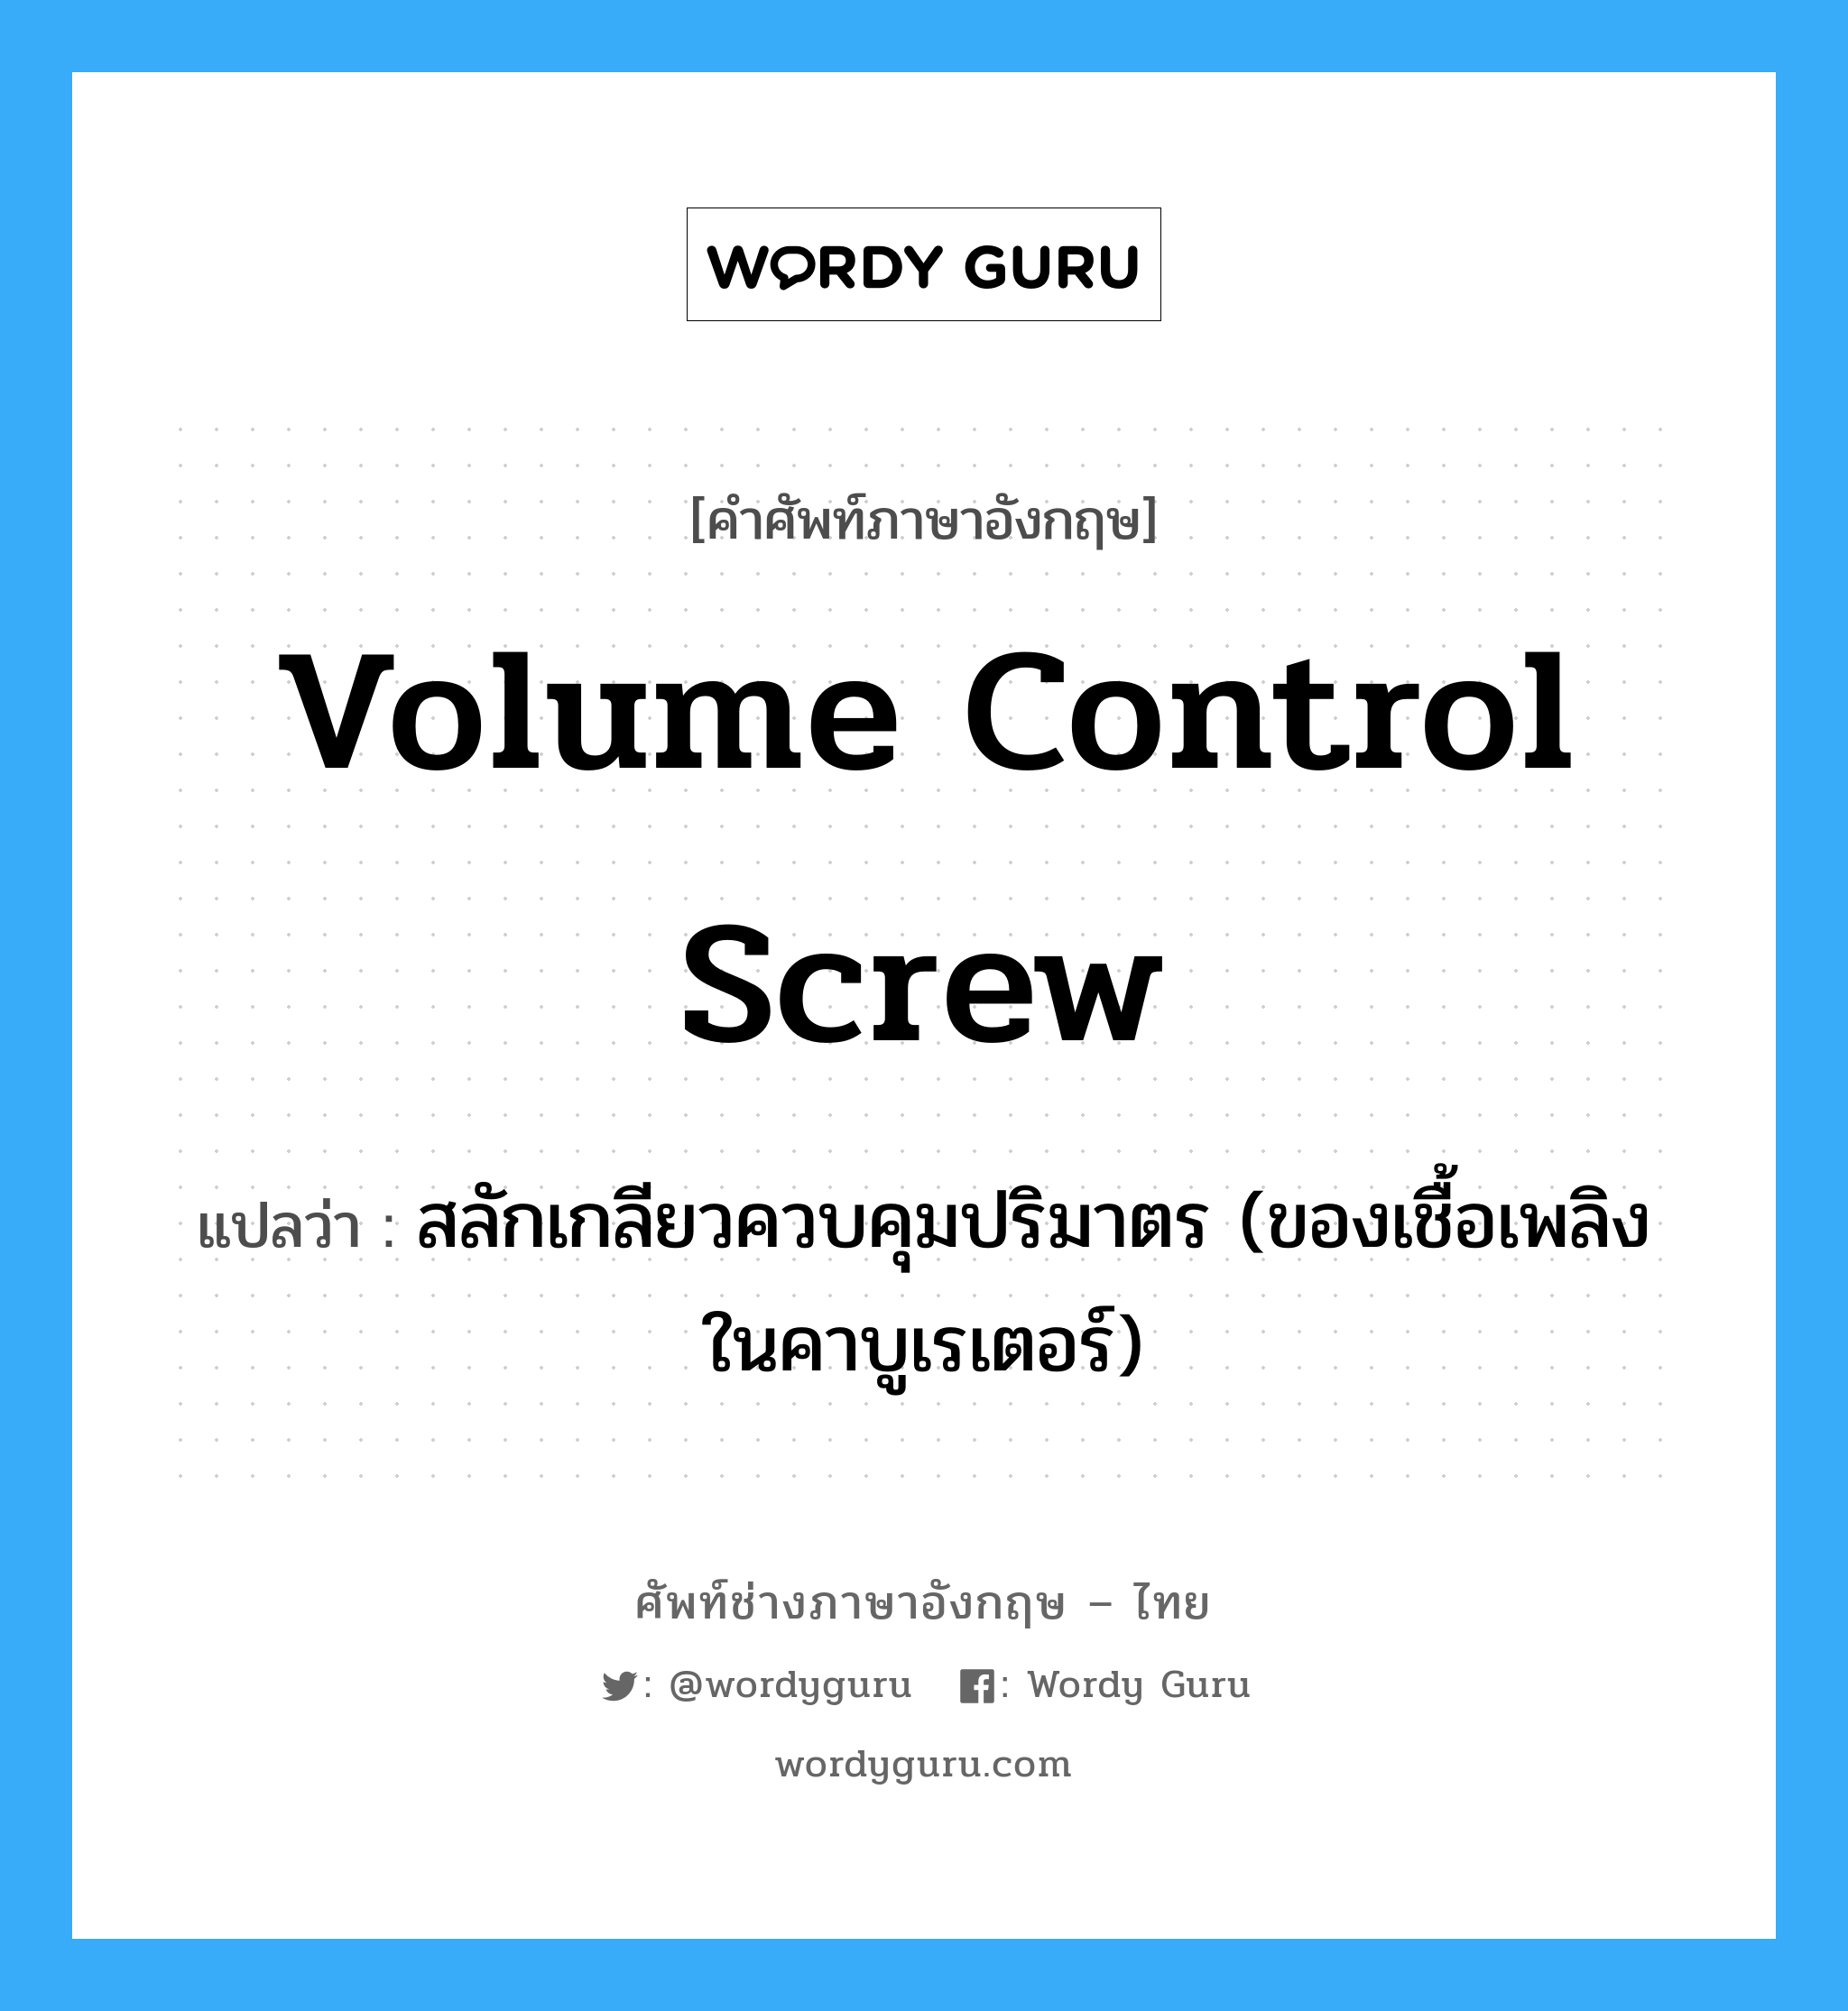 volume control screw แปลว่า?, คำศัพท์ช่างภาษาอังกฤษ - ไทย volume control screw คำศัพท์ภาษาอังกฤษ volume control screw แปลว่า สลักเกลียวควบคุมปริมาตร (ของเชื้อเพลิงในคาบูเรเตอร์)